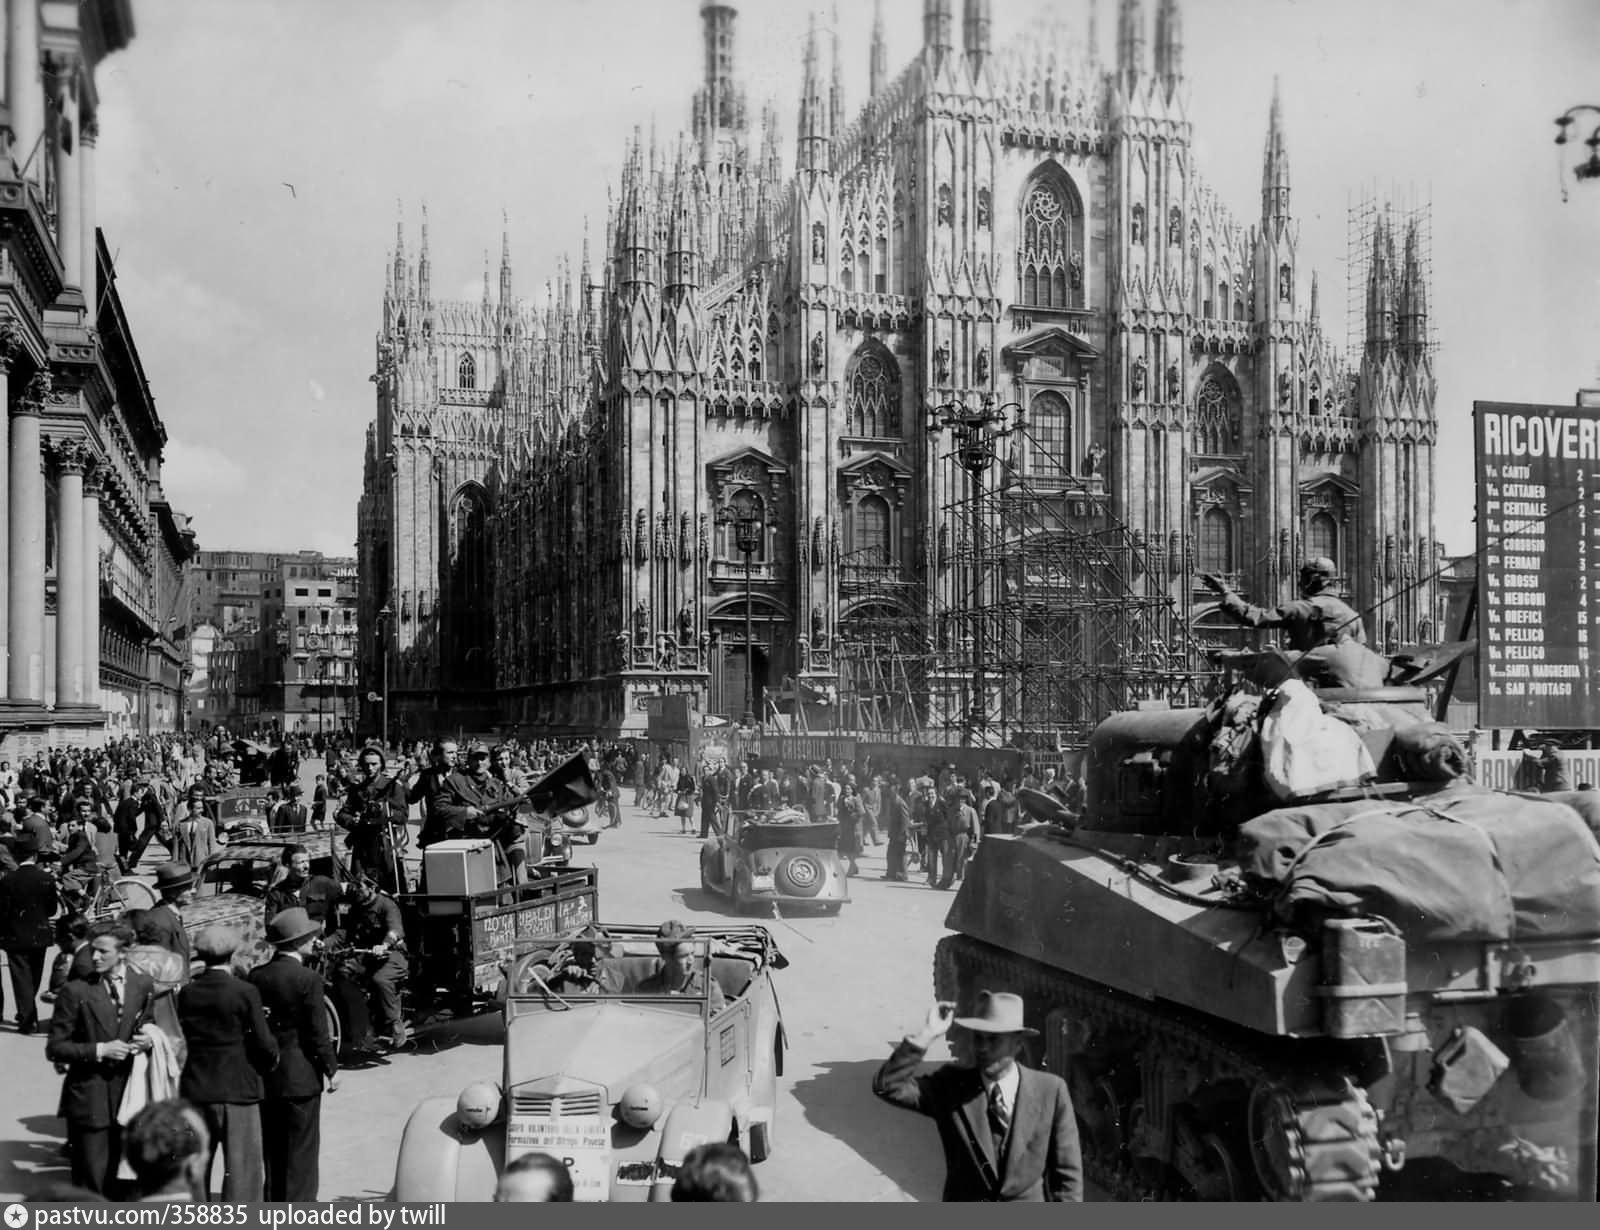 Организация созданная после второй мировой. Италия во второй мировой войне. Италия после войны. Италия 1945.